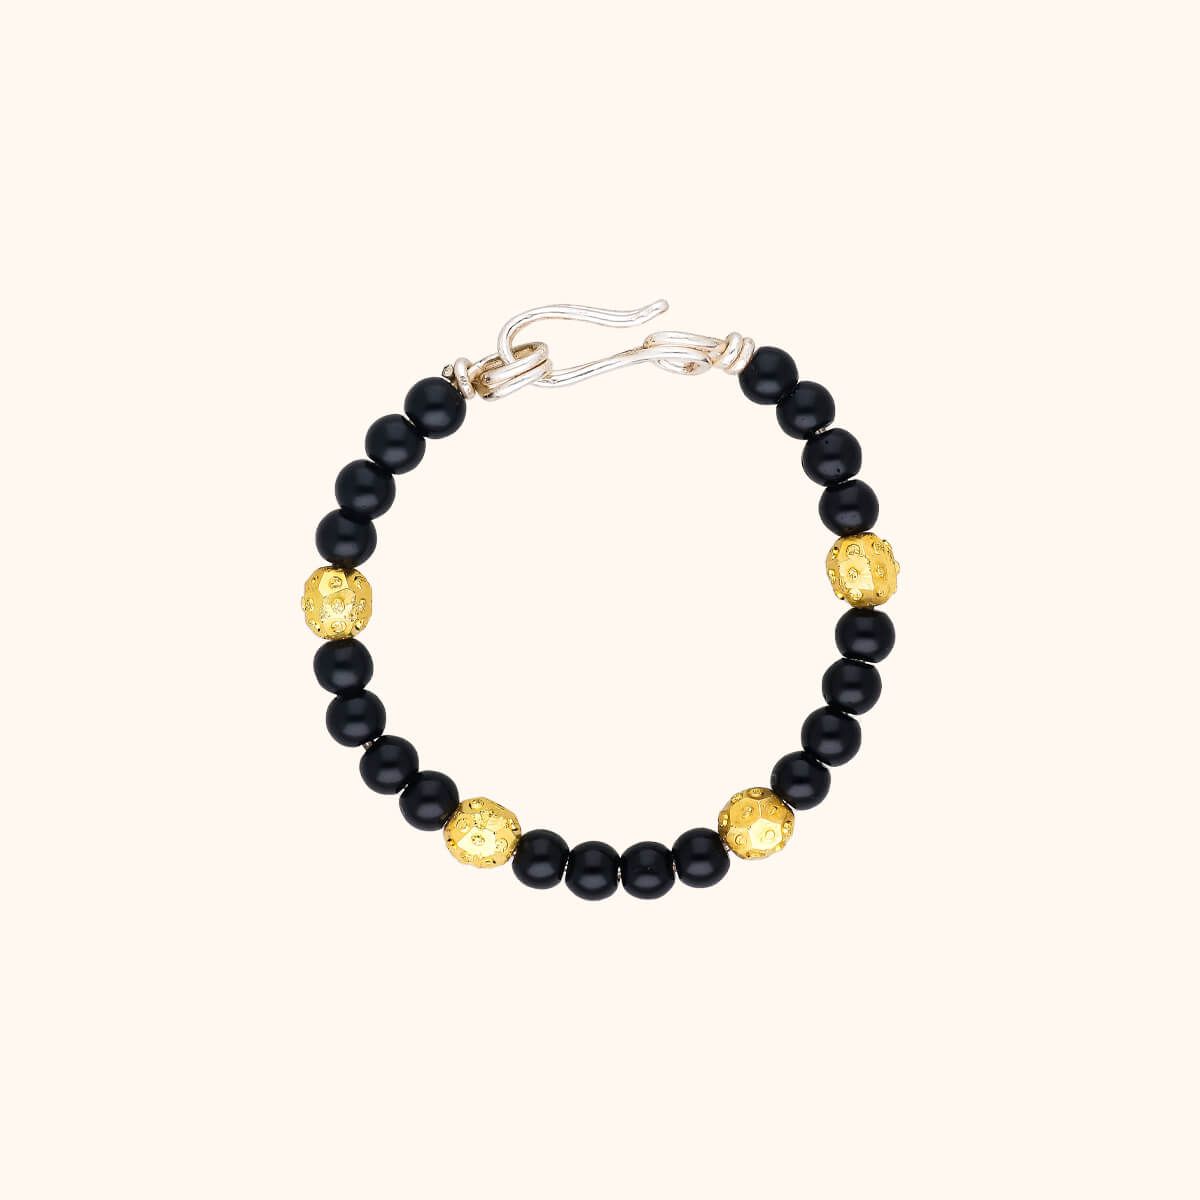 Share 86+ womens black bead bracelet - POPPY